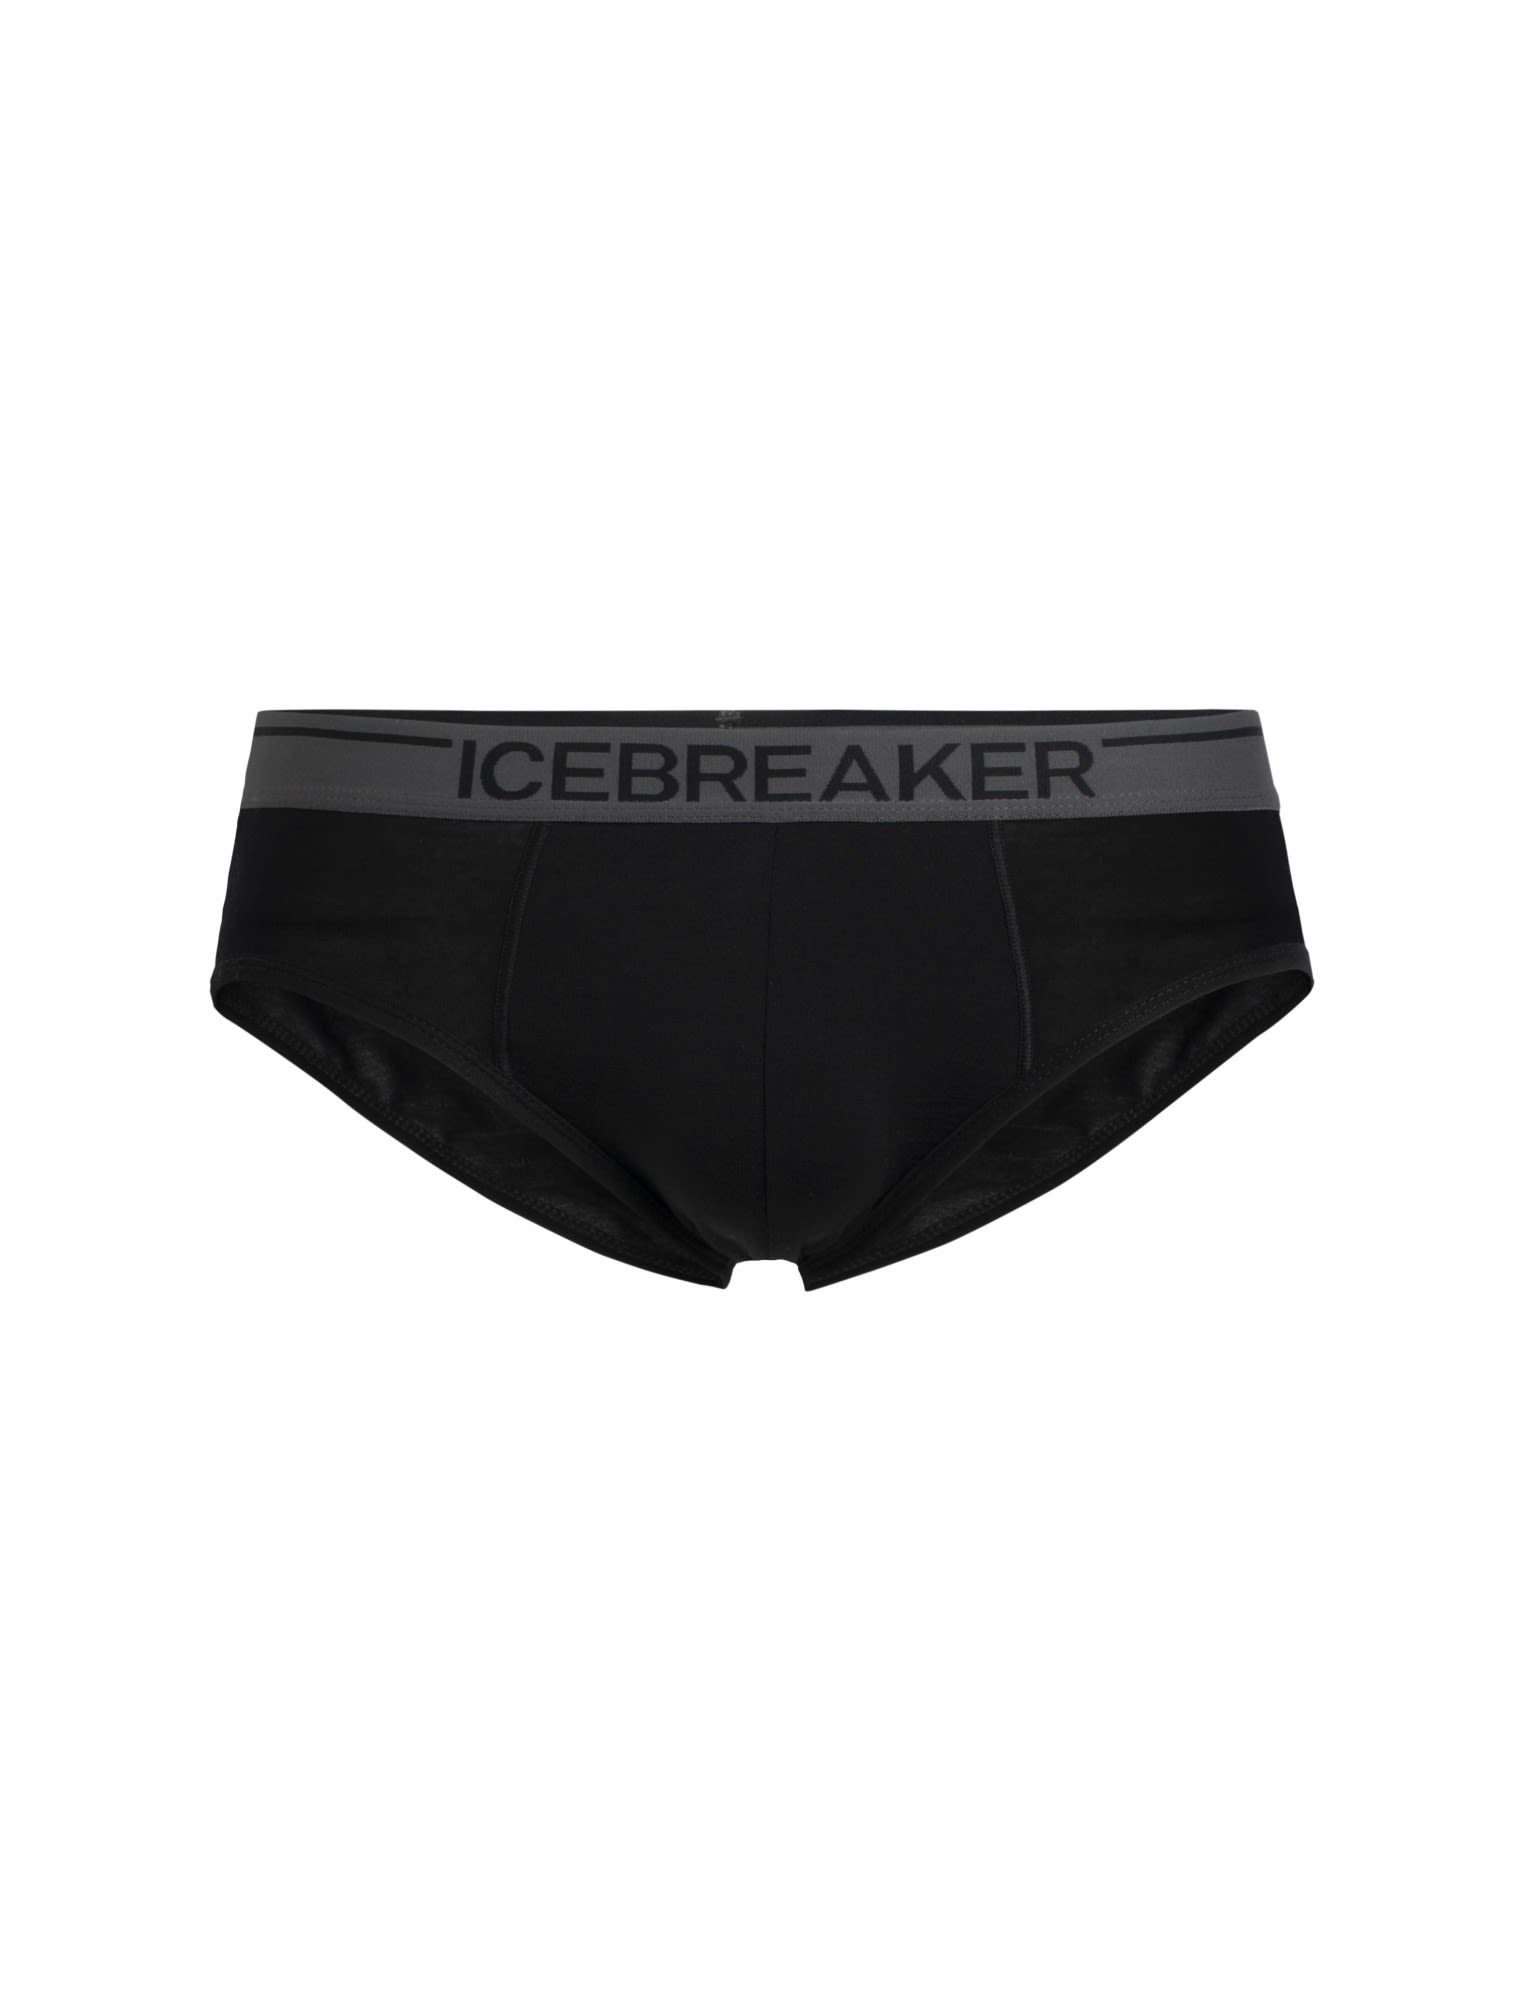 Kurze Icebreaker Unterhose Black Herren Anatomica Briefs Icebreaker Lange M